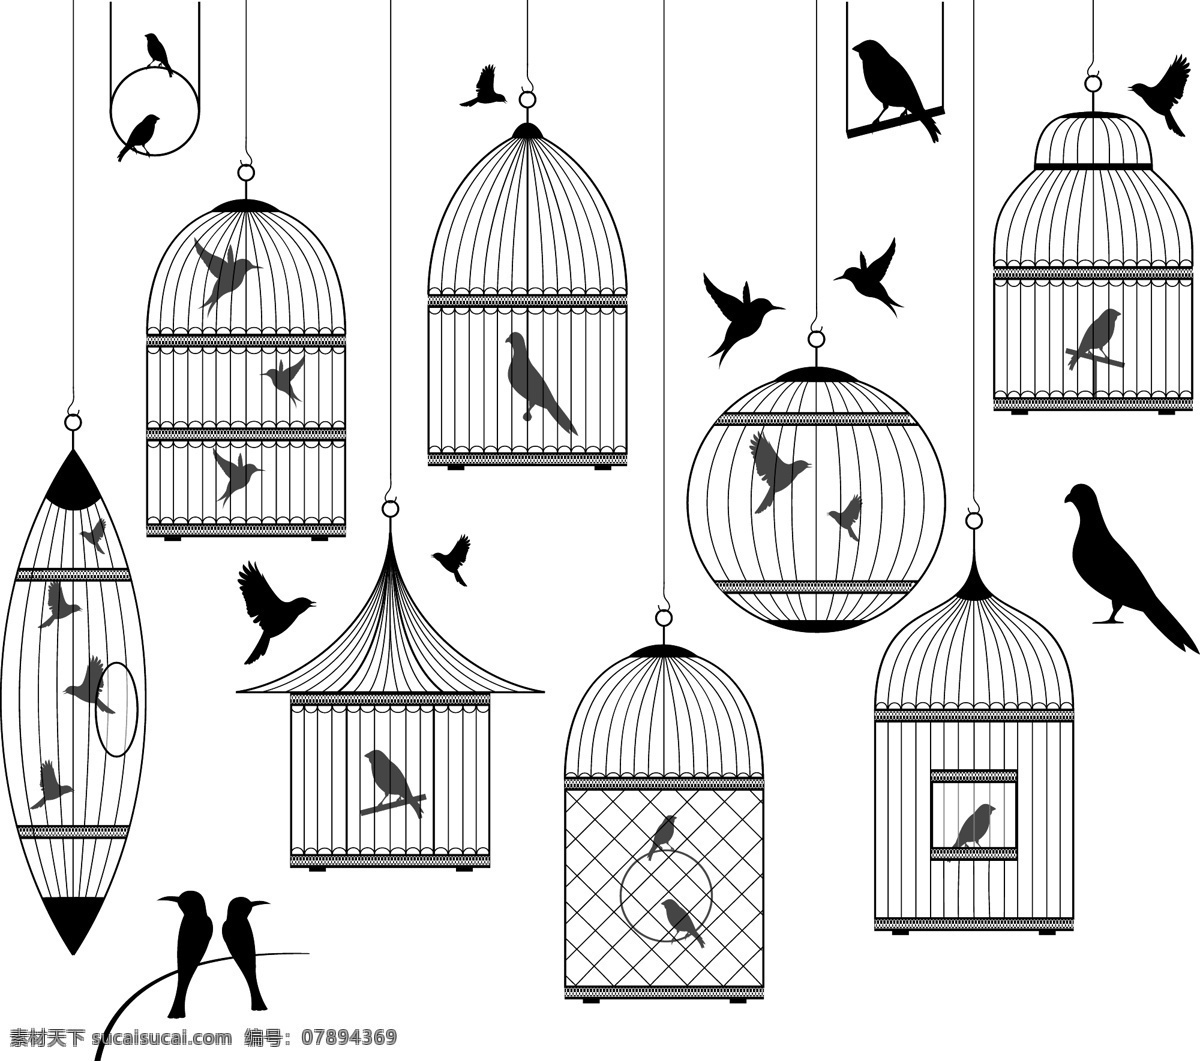 黑白 鸟笼 鸟 矢量 矢量素材 设计素材 自由